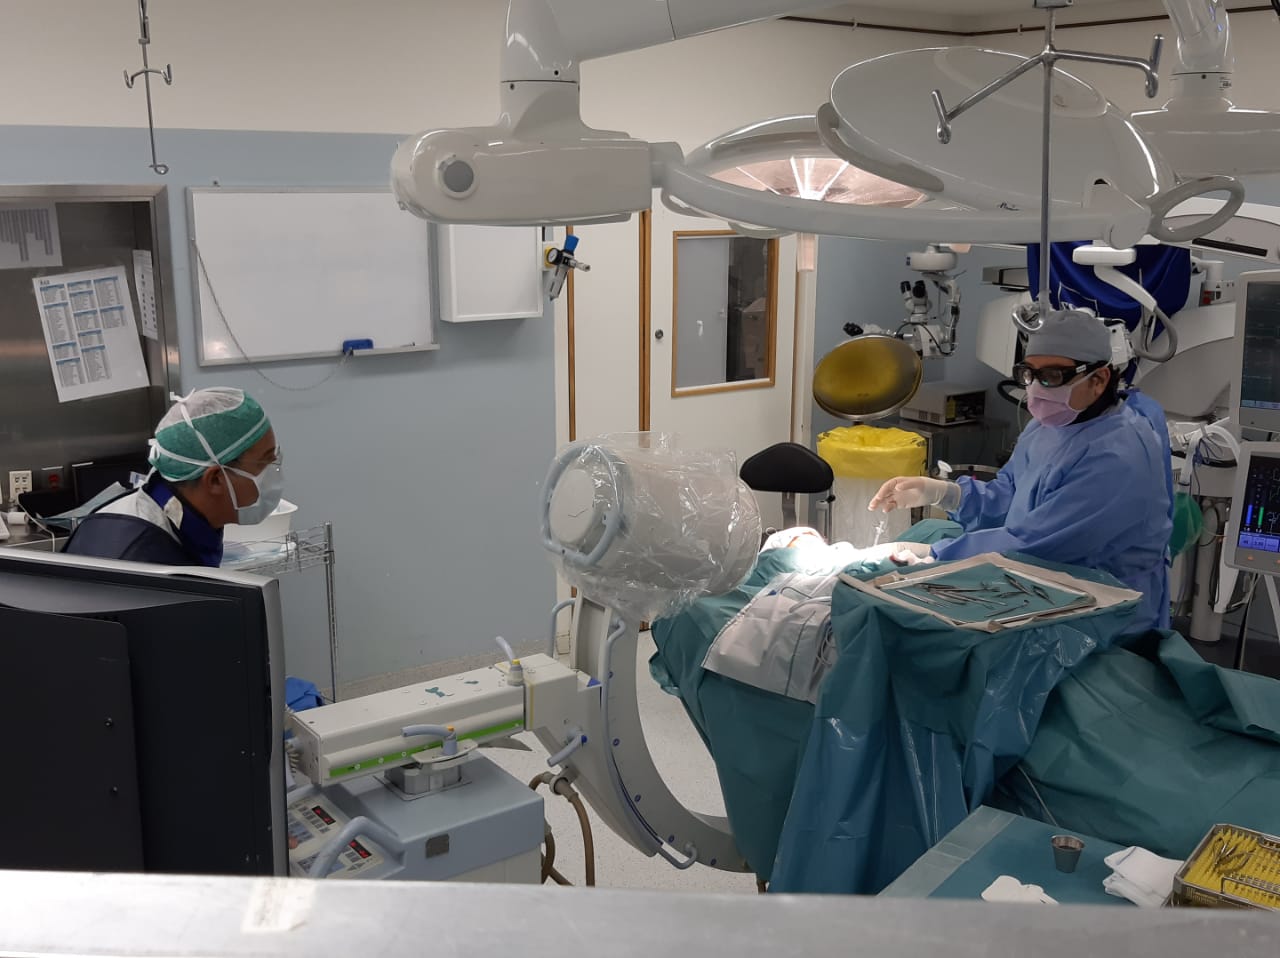  نجاح أول جراحة في لبنان لاستئصال تشوه كبير من عين طفل Image001